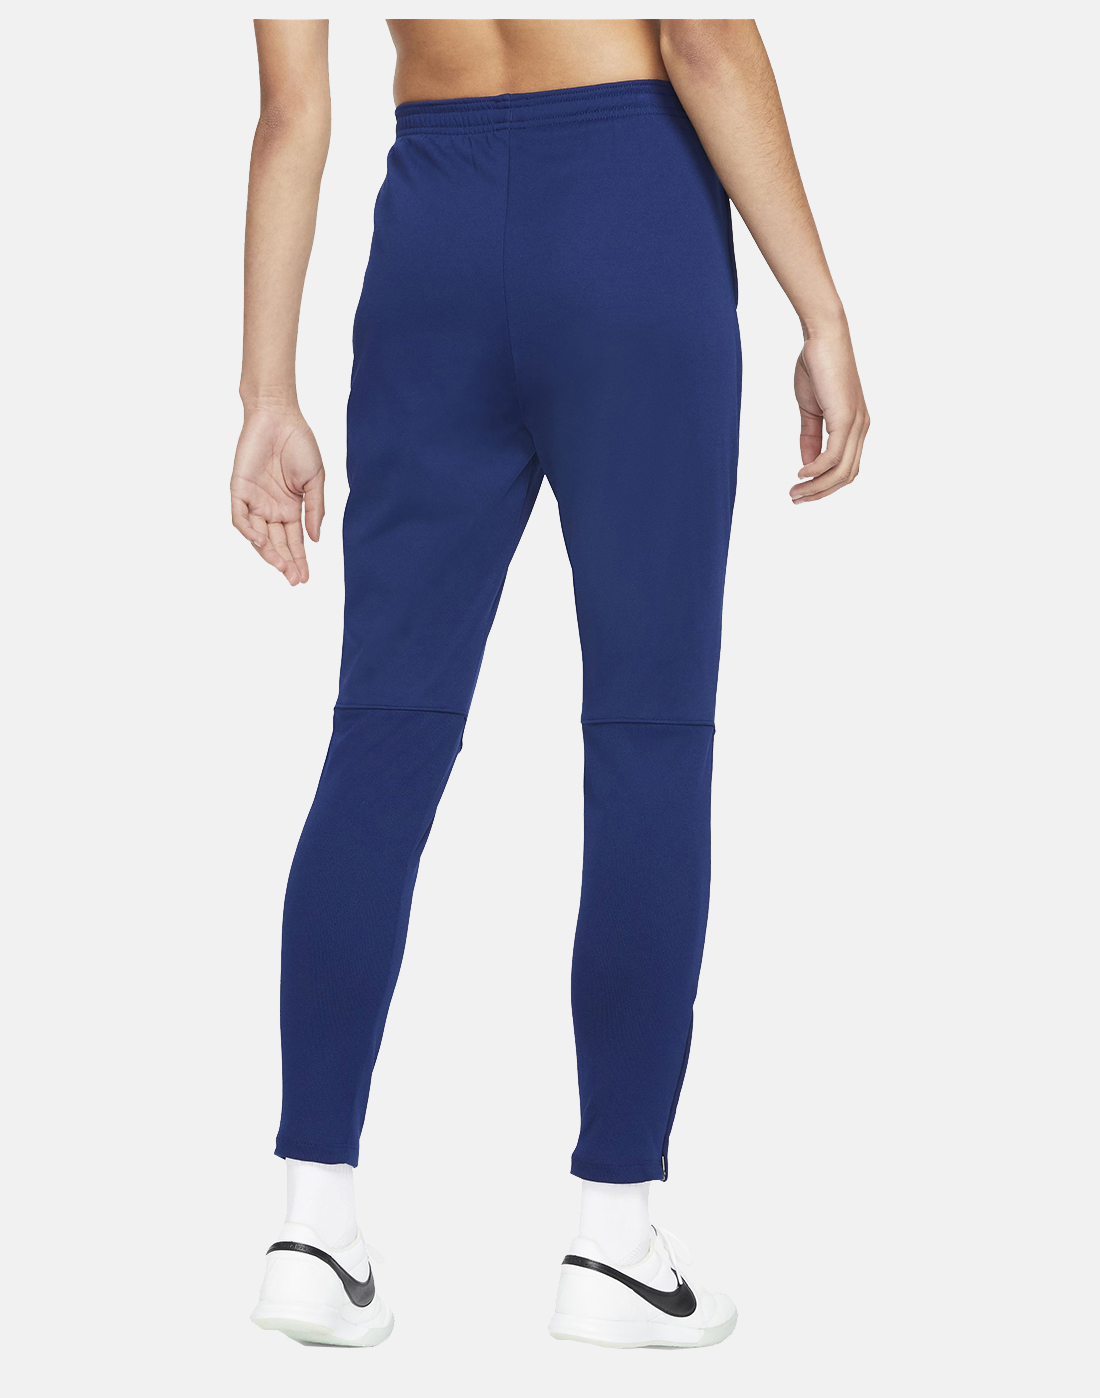 Nike Womens Academy Pants - Blue